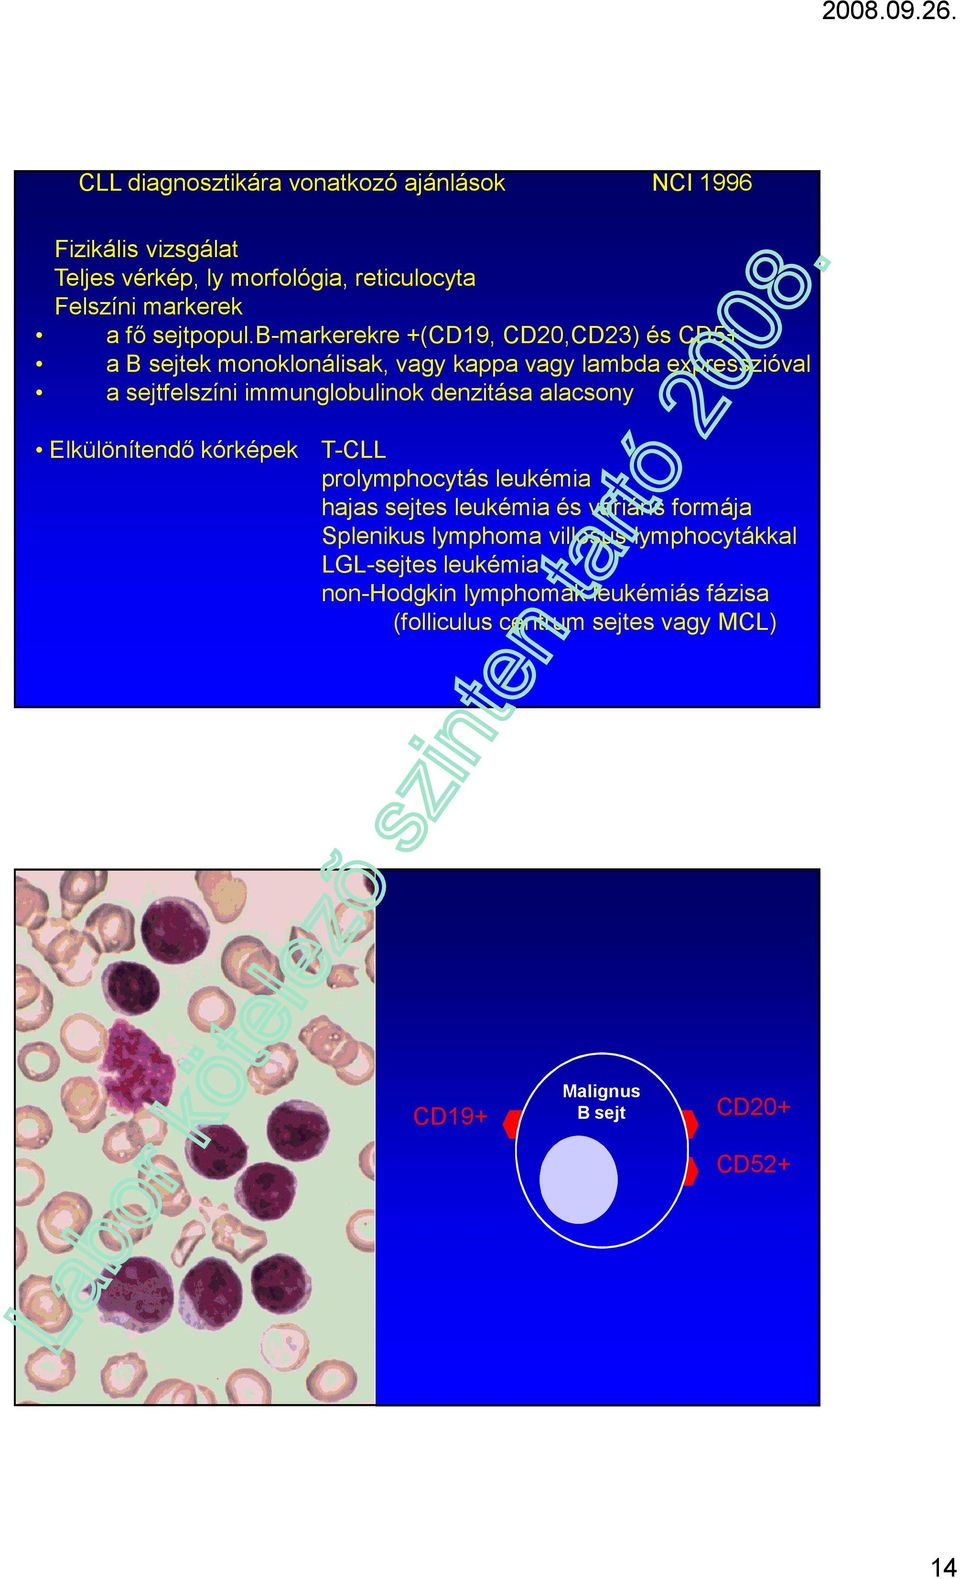 b-markerekre +(CD19, CD20,CD23) és CD5+ a B sejtek monoklonálisak, vagy kappa vagy lambda expresszióval a sejtfelszíni immunglobulinok